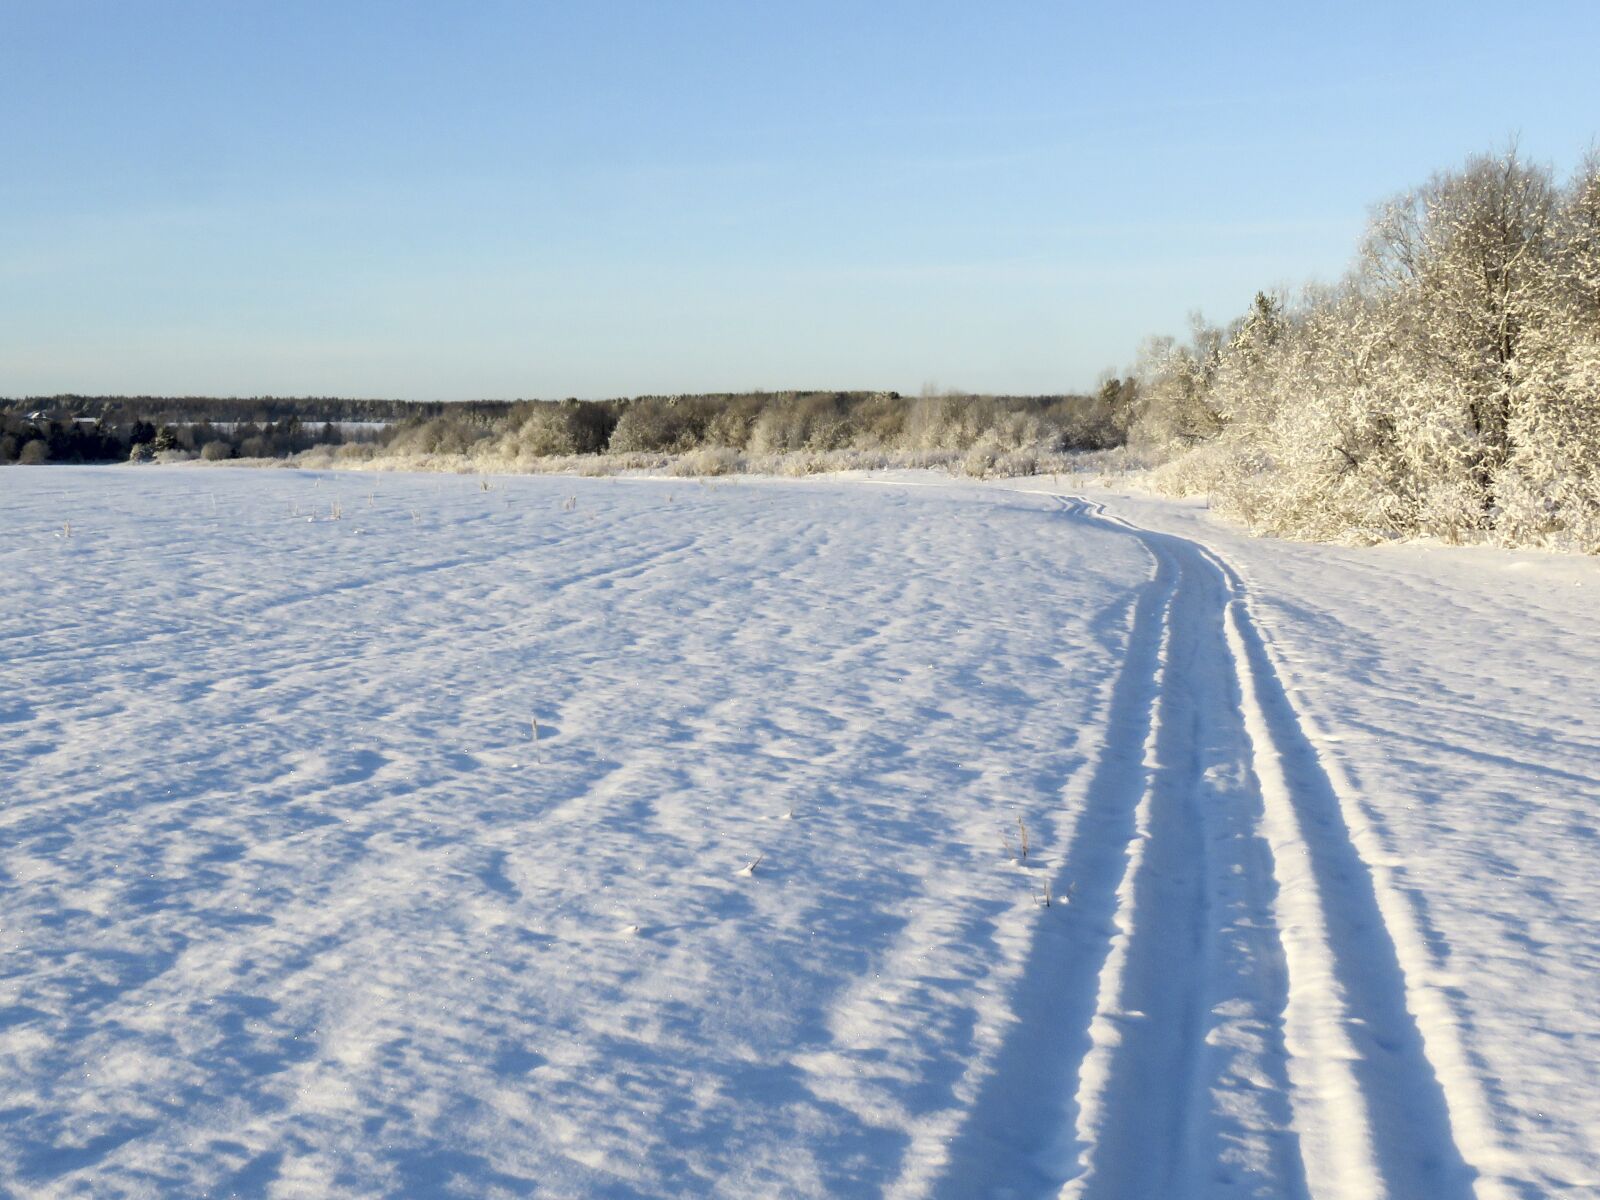 Canon PowerShot SX60 HS sample photo. Winter, landscape, snow photography